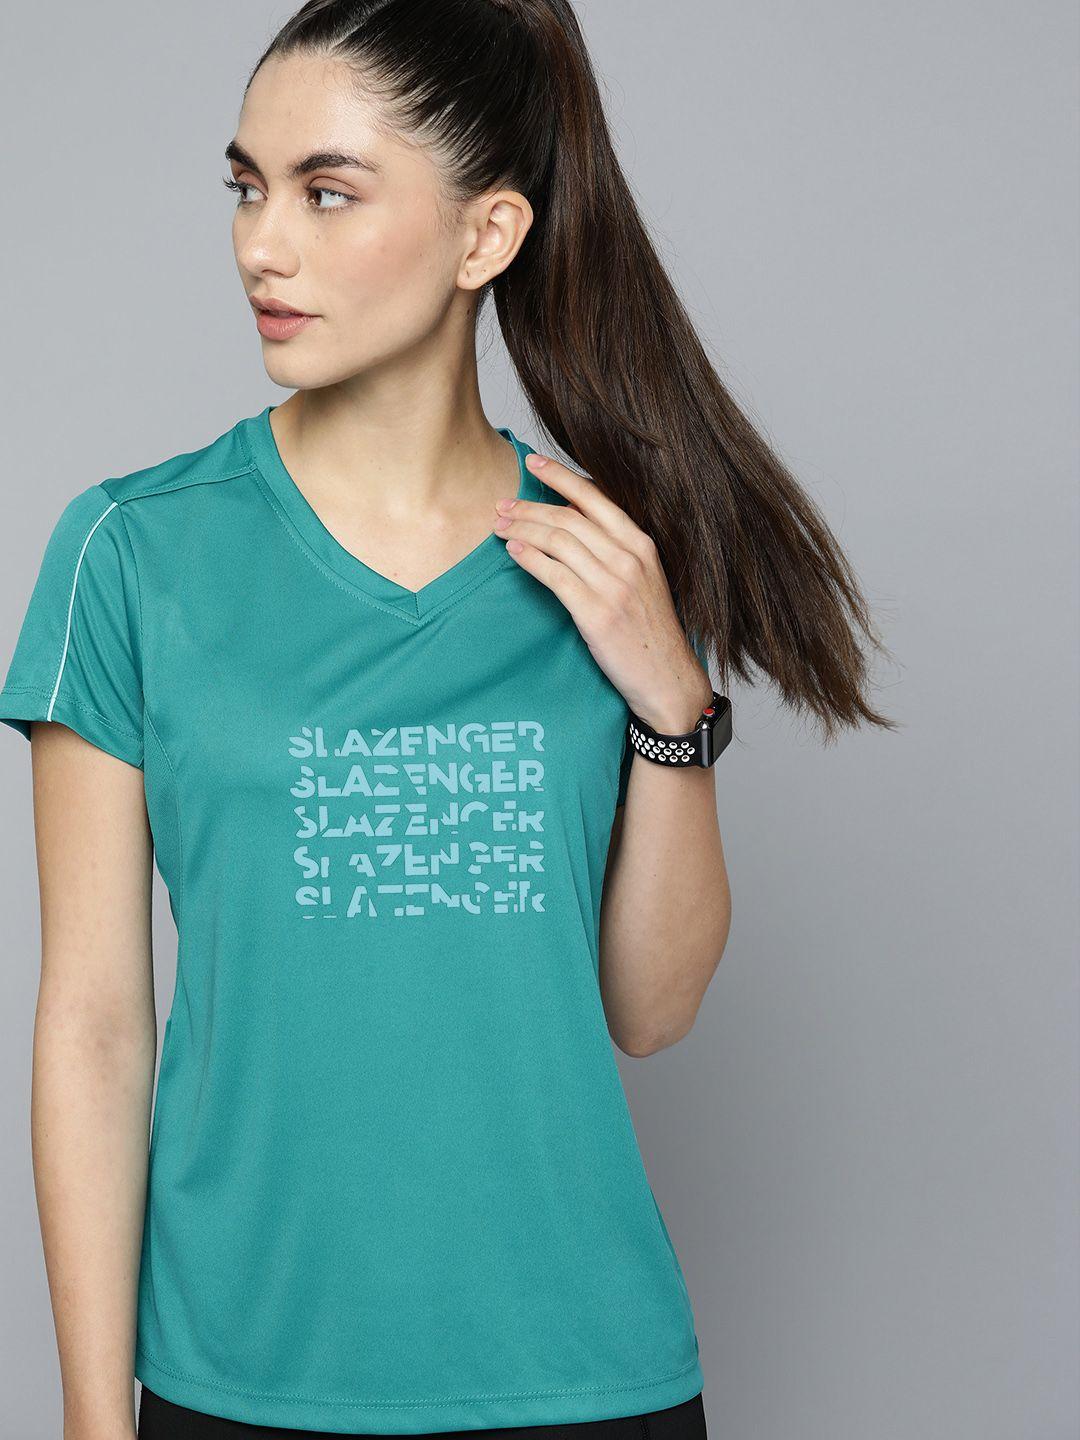 slazenger women teal green typography printed v-neck running t-shirt